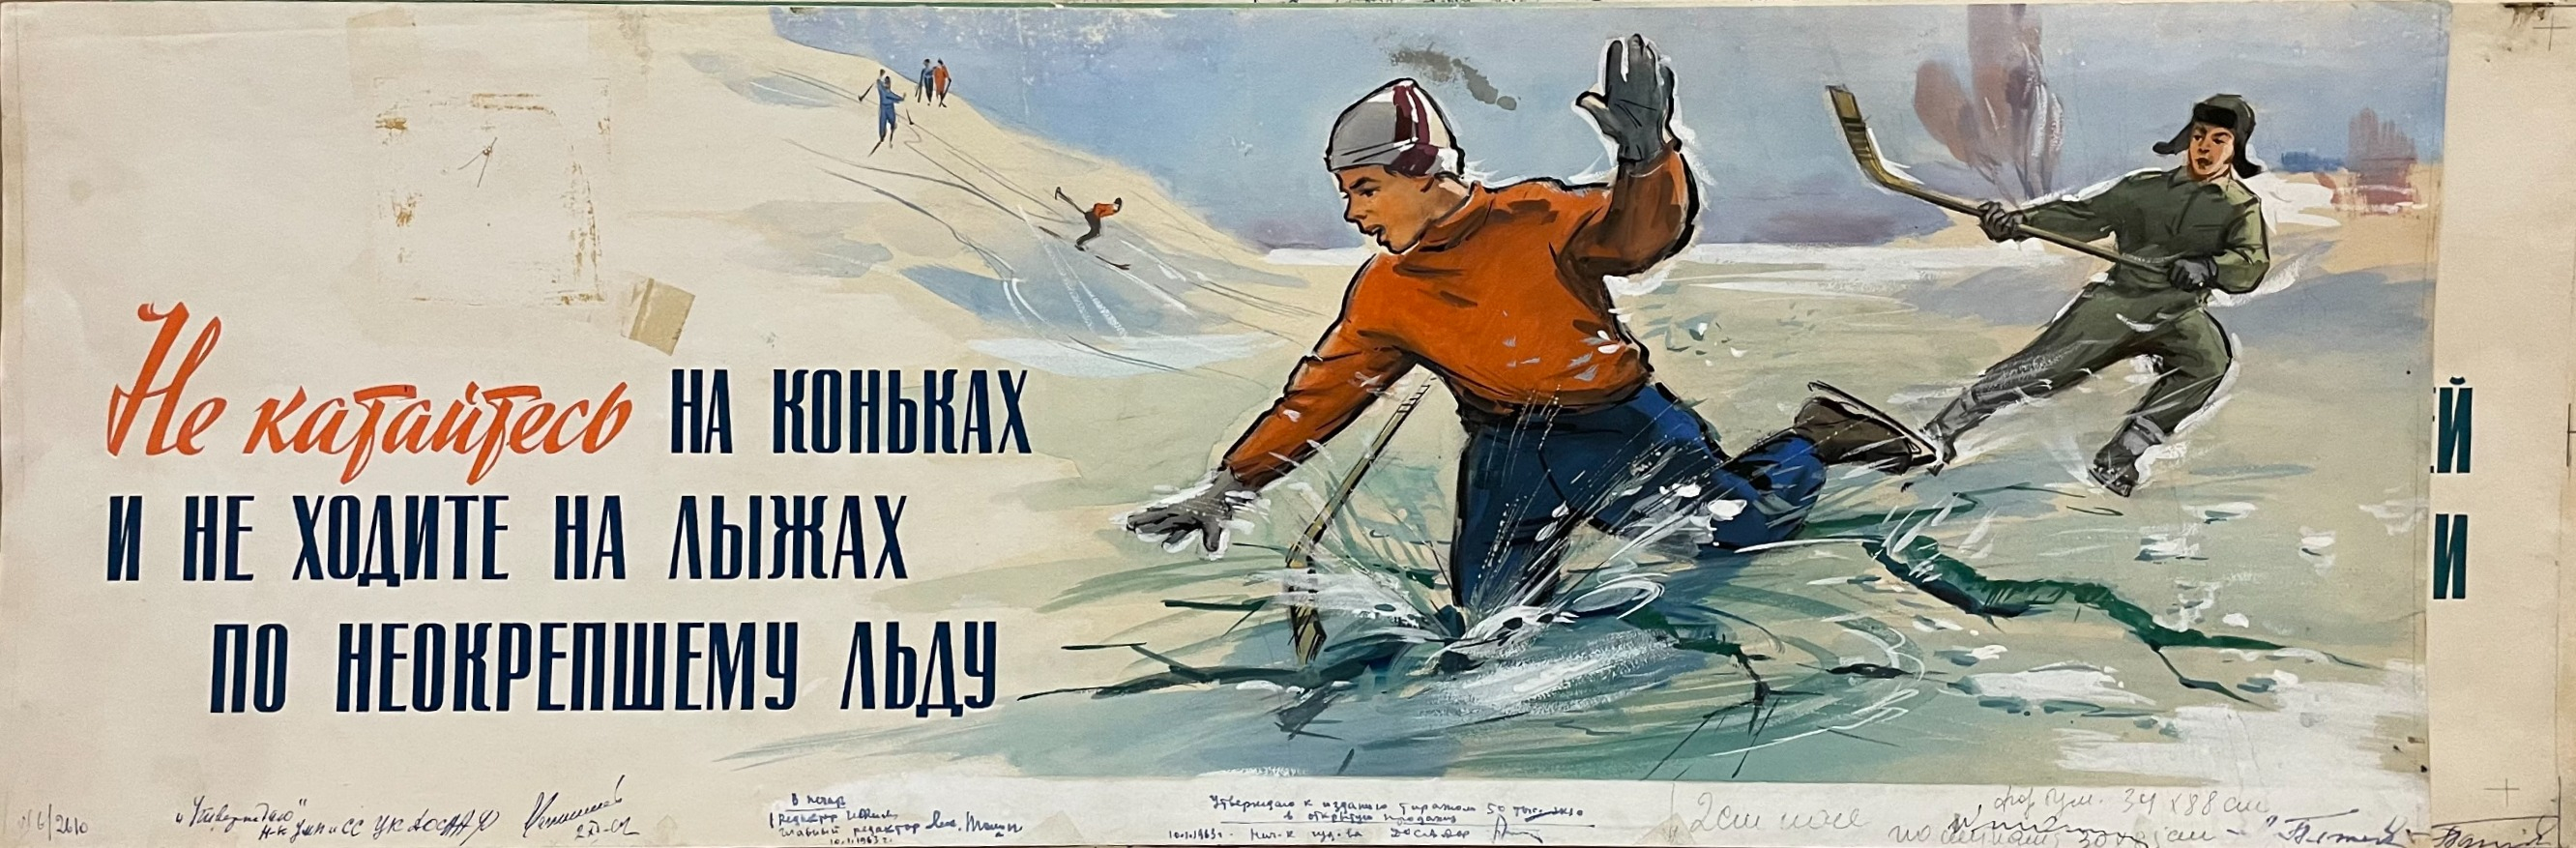 Кузгинов Константин Михайлович. Не катайтесь на коньках и не ходите на лыжах по неокрепшему льду